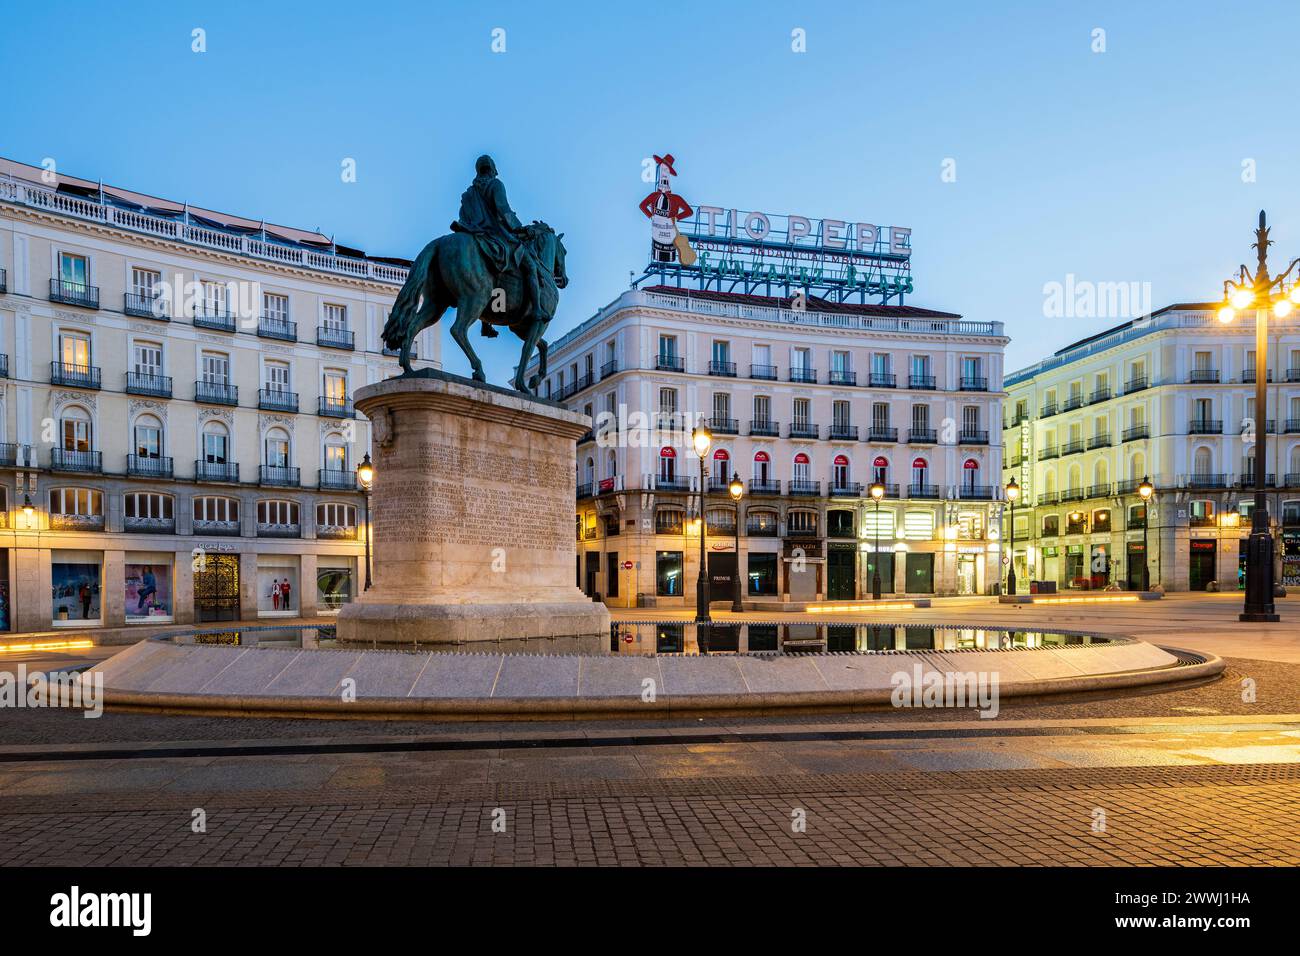 Puerta del Sol square, Madrid, Spain Stock Photo